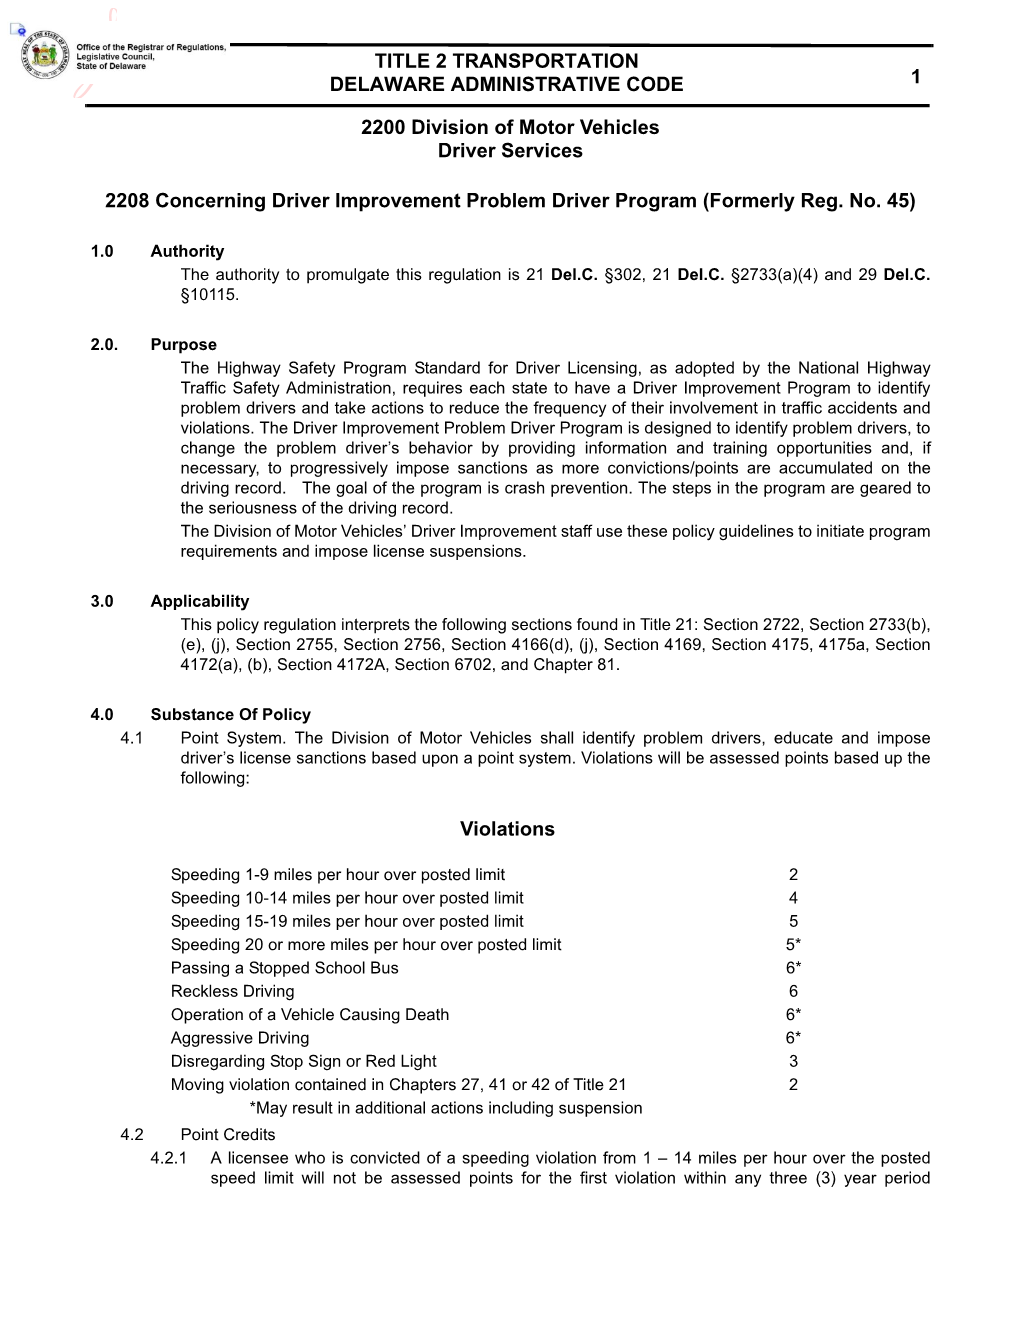 2208 Concerning Driver Improvement Problem Driver Program (Formerly Reg